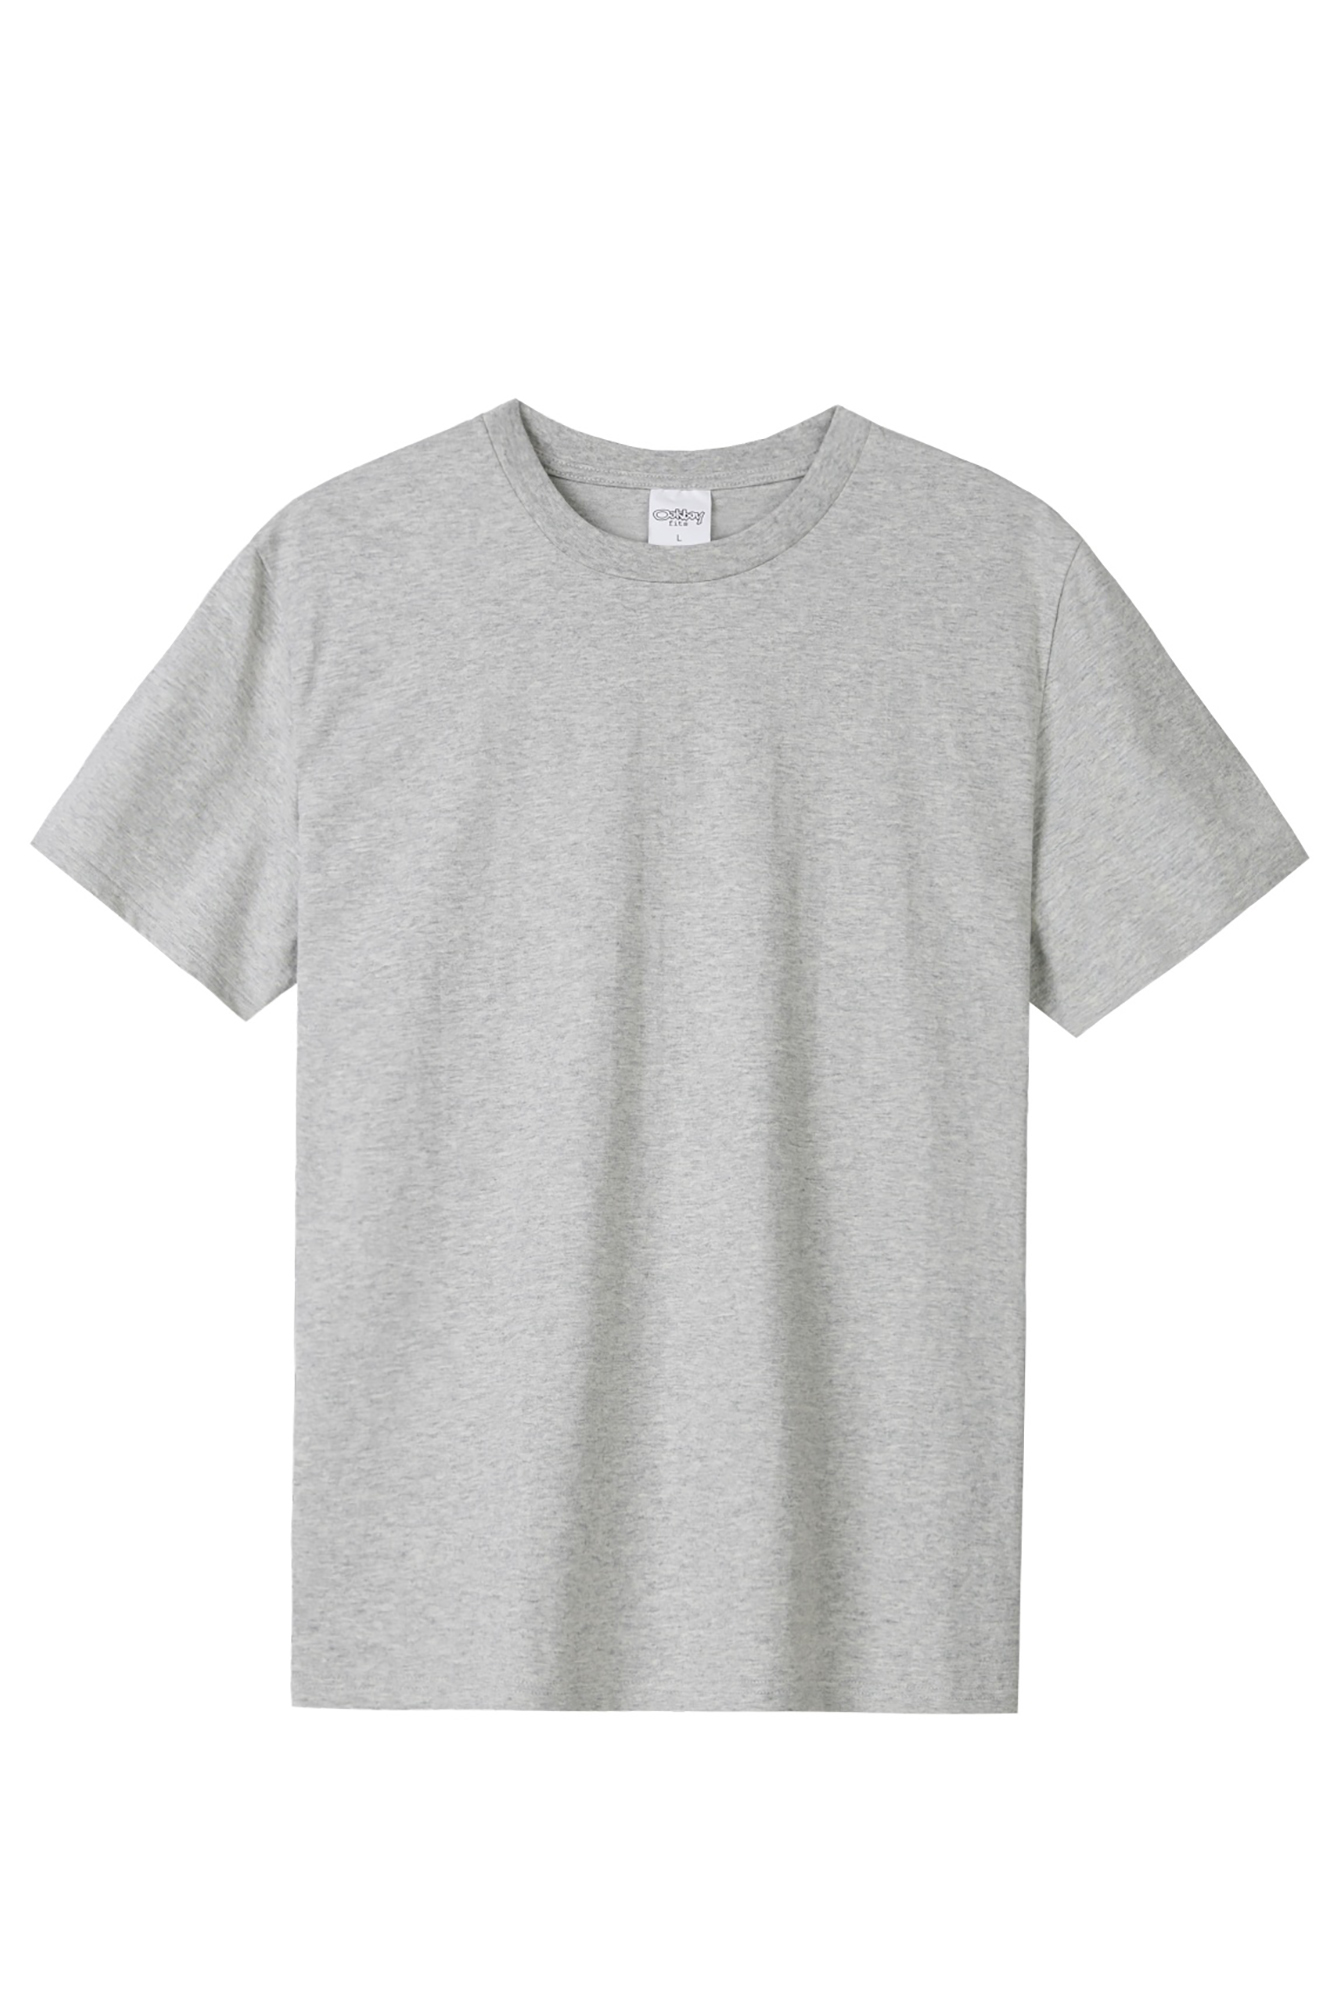 Wholesale Premium Basic Solid T-Shirts - Unisex